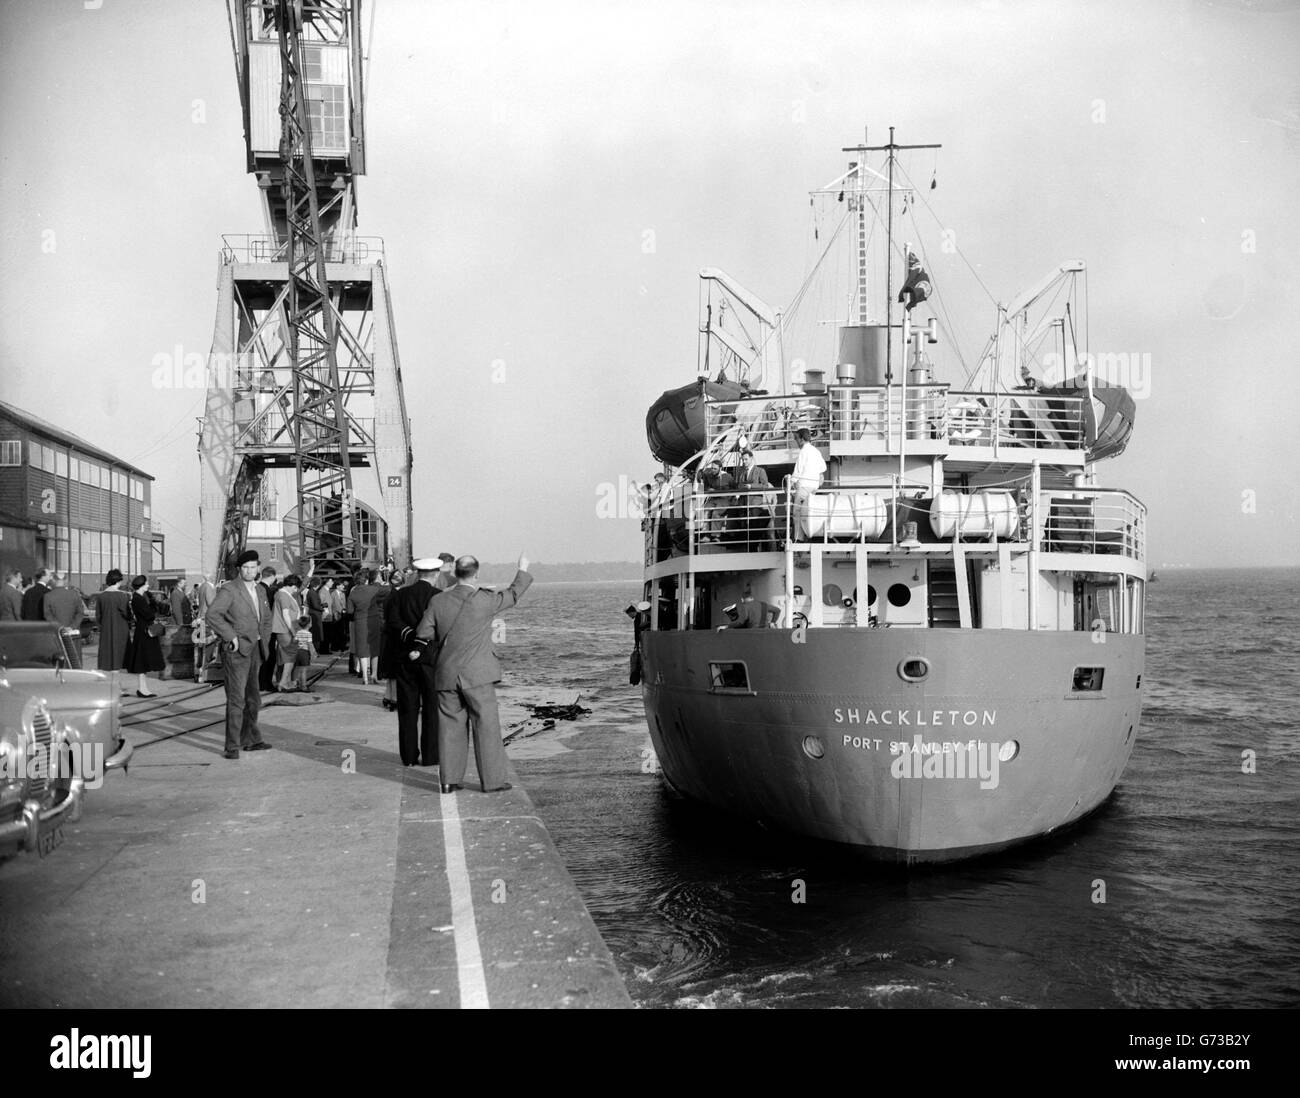 Der Shackleton geht zum Anatarktischen. Das Royal Research Ship the Shackleton verlässt Southampton für ihre jährliche Hilfsreise in die Antarktis, mit Personal und Hilfsgütern für die Falkland Islands Dependencies Survey. Stockfoto